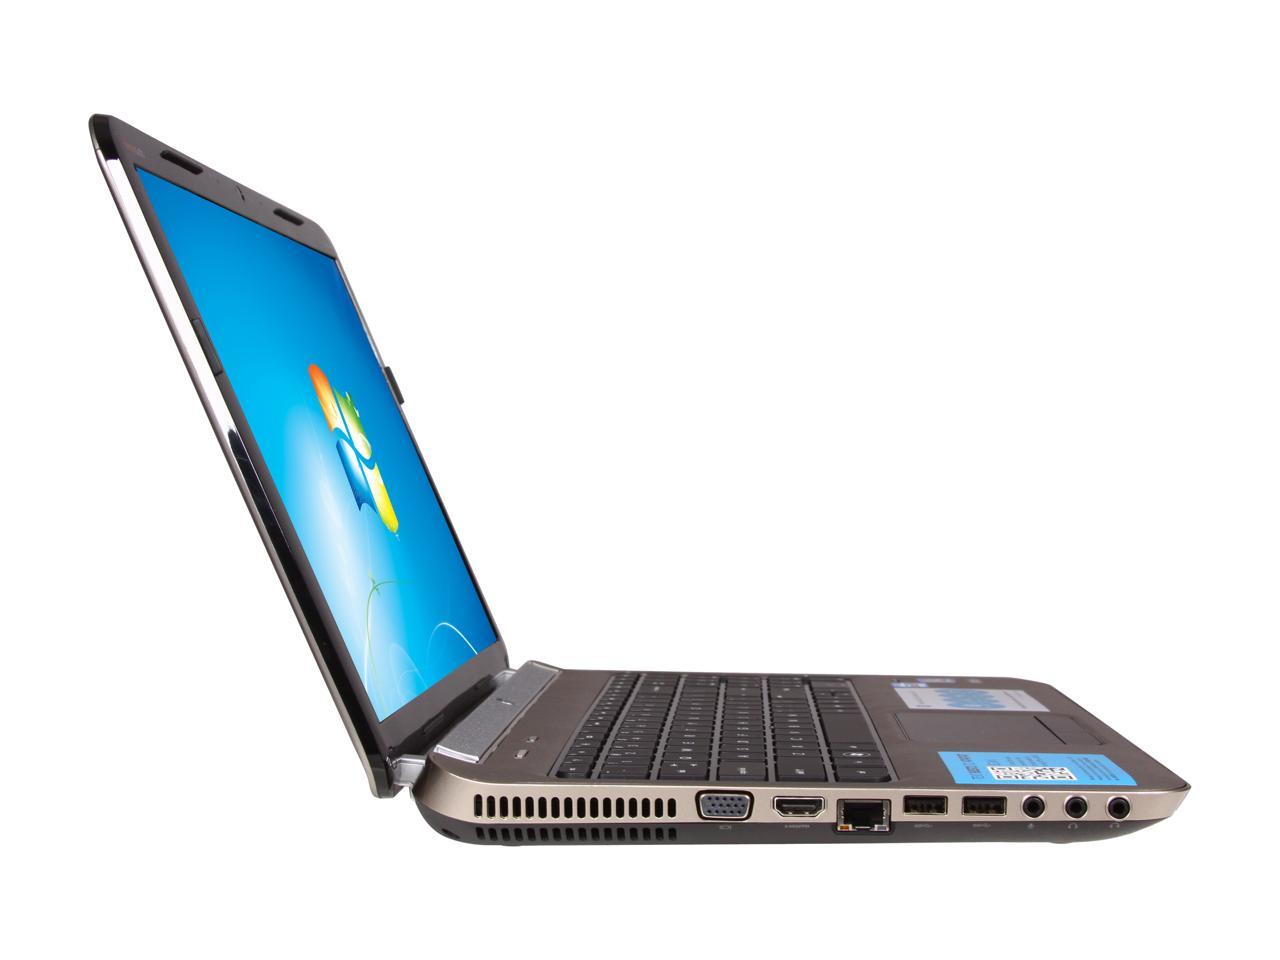 HP Laptop Pavilion DV6-6C15NR Intel Core i5 2nd Gen 2450M (2.50 GHz) 6